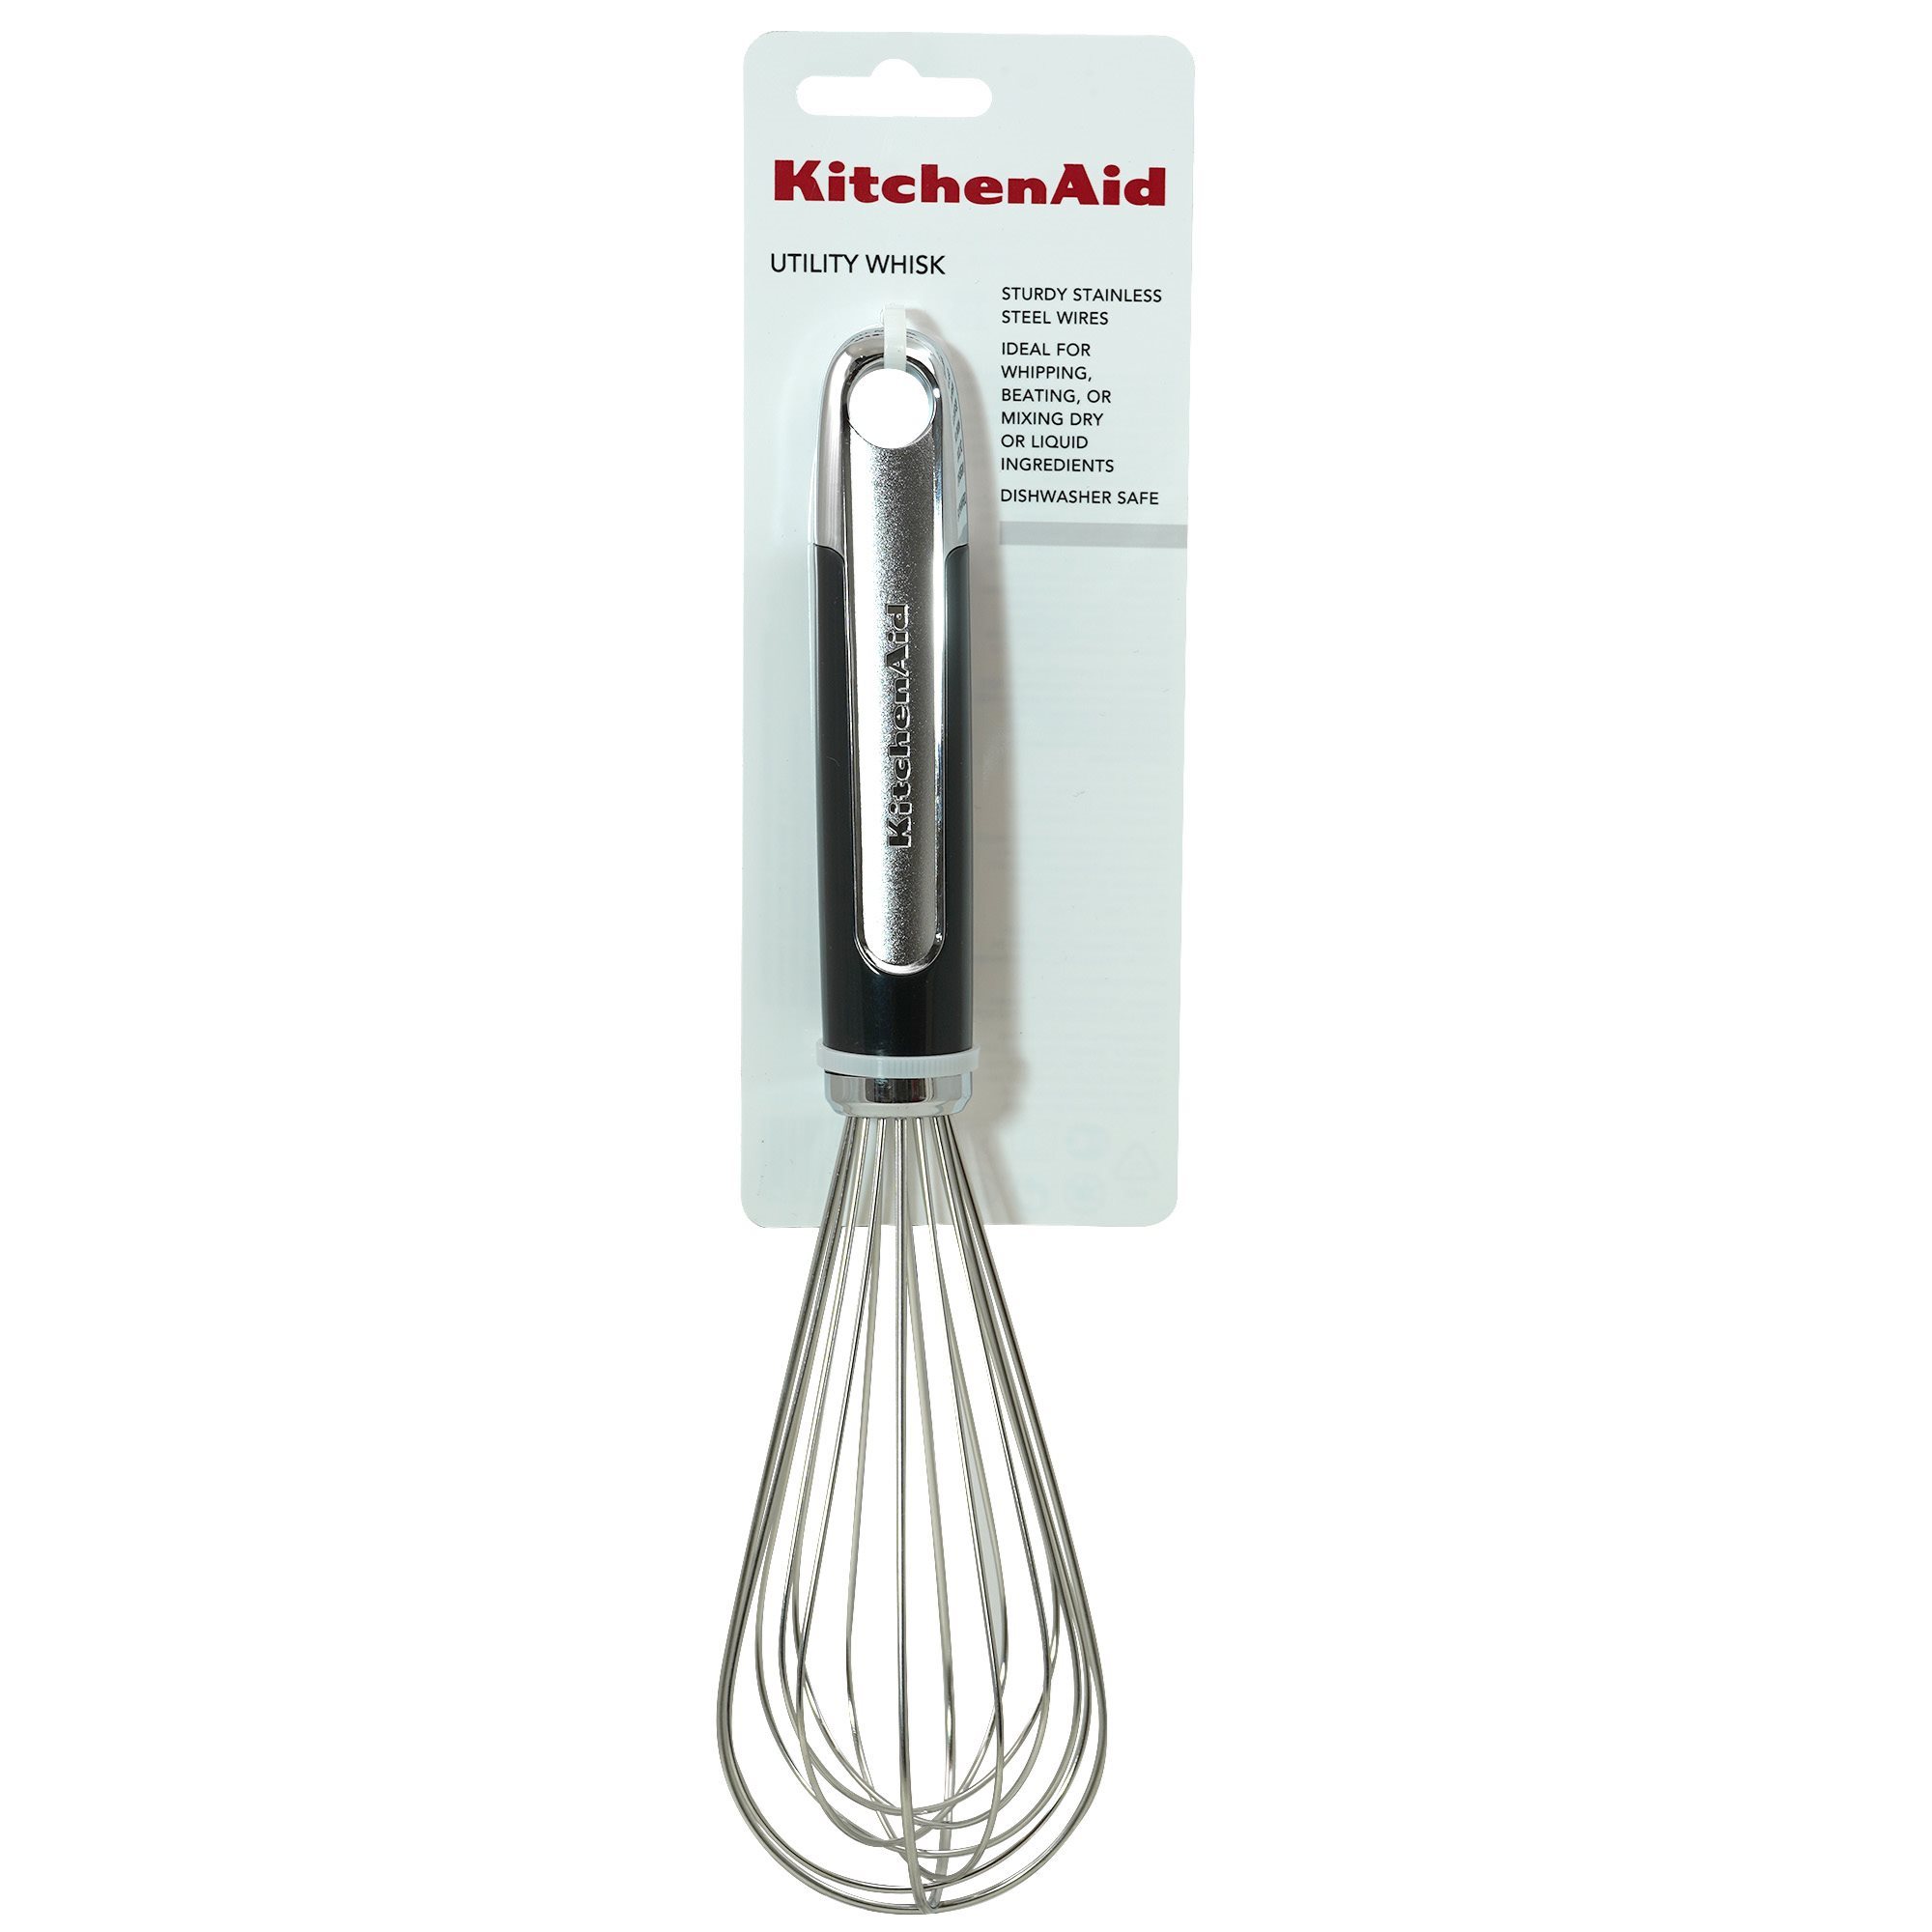 Wire strainer, stainless steel, 35.5 cm, Almond Cream - KitchenAid